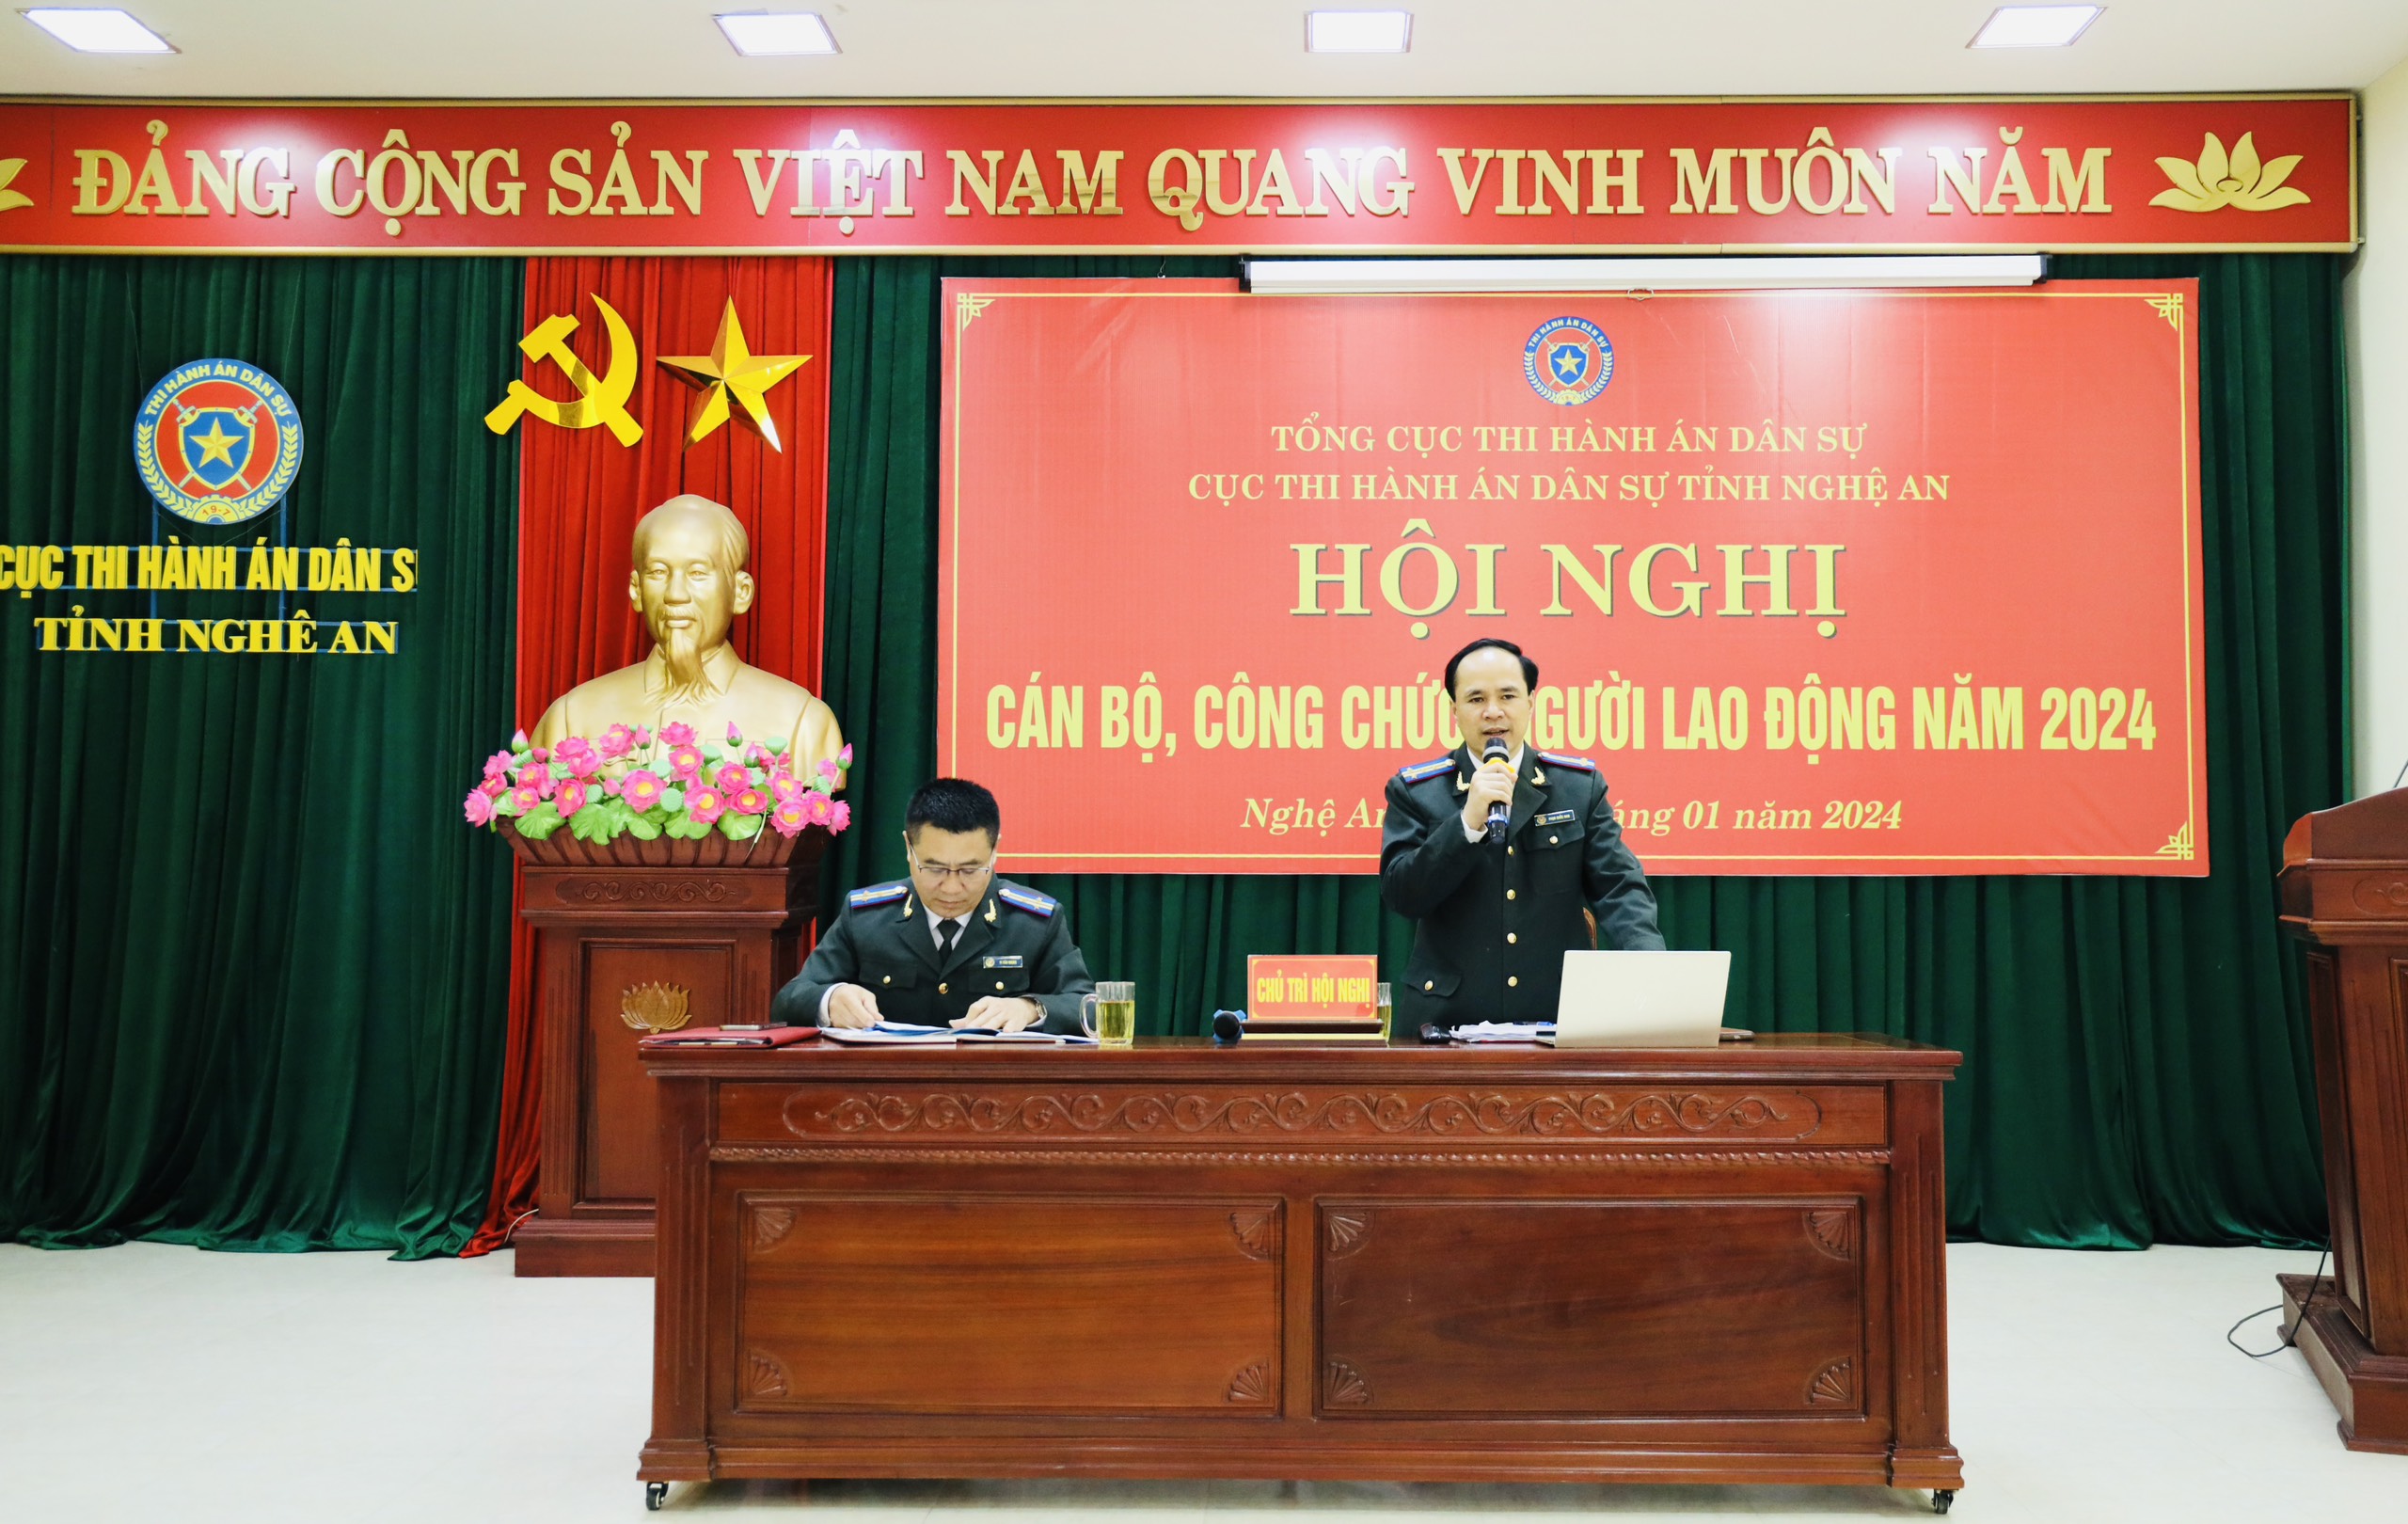 Cục Thi hành án dân sự tỉnh Nghệ An tổ chức Hội nghị cán bộ, công chức, người lao động năm 2024.